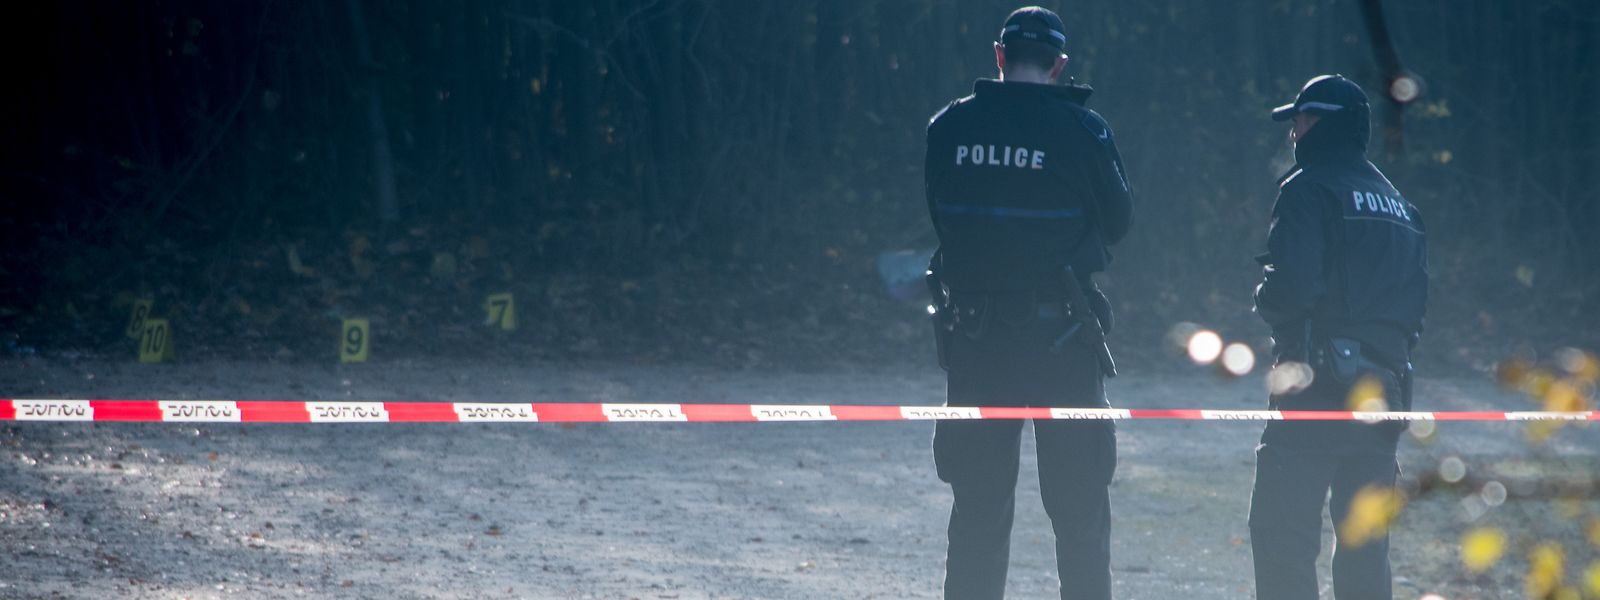 Der zweite Leichnam wurde in der Nacht zum 14. November 2016 am Waldparkplatz Fräiheetsbam in Strassen entdeckt.